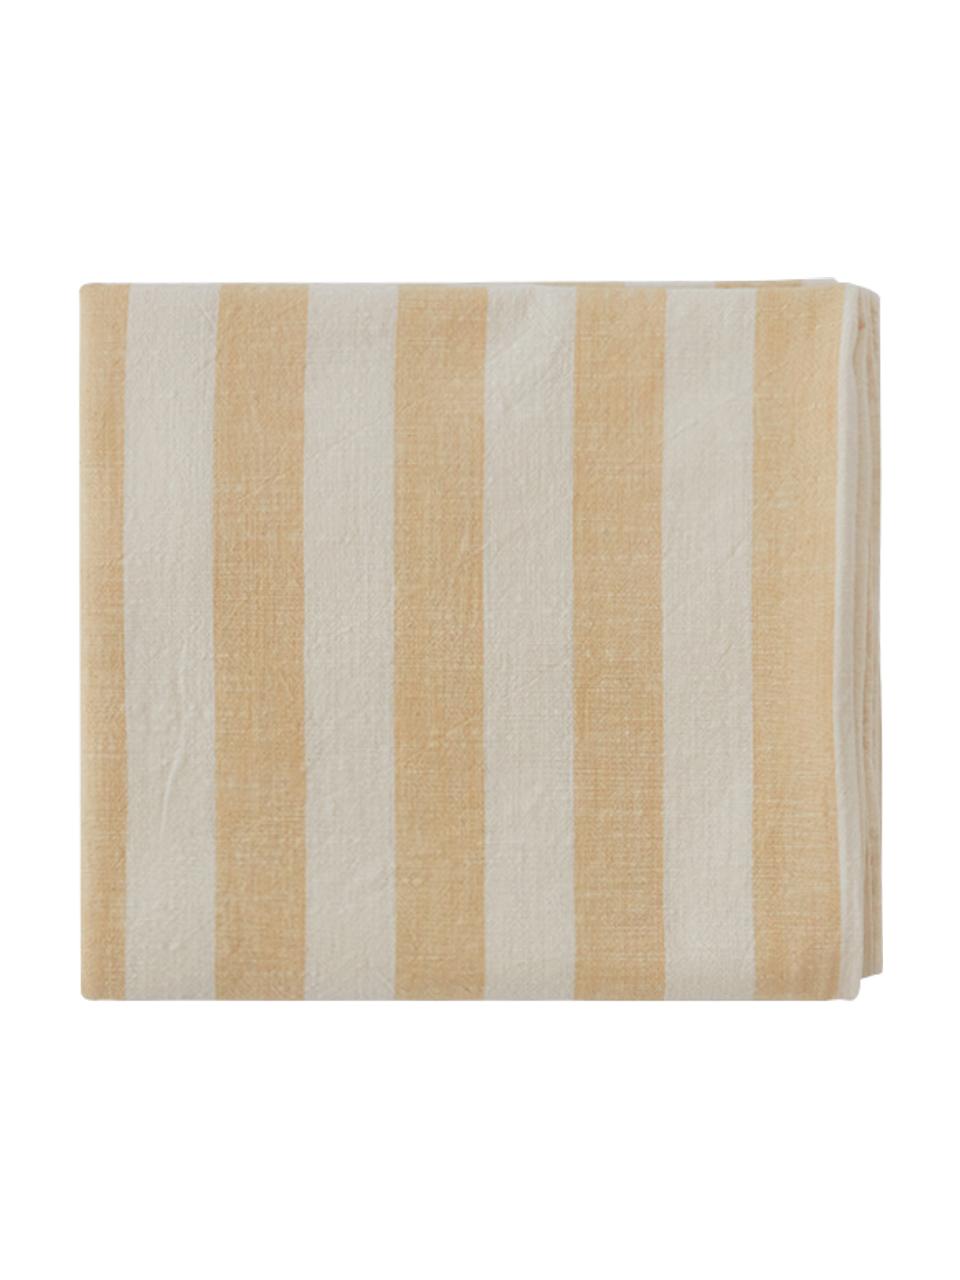 Gestreifte Baumwoll-Tischdecke Strip, 100 % Baumwolle, Gelb, Weiß, gestreift, Für 4 - 6 Personen (B 140 x L 200 cm)